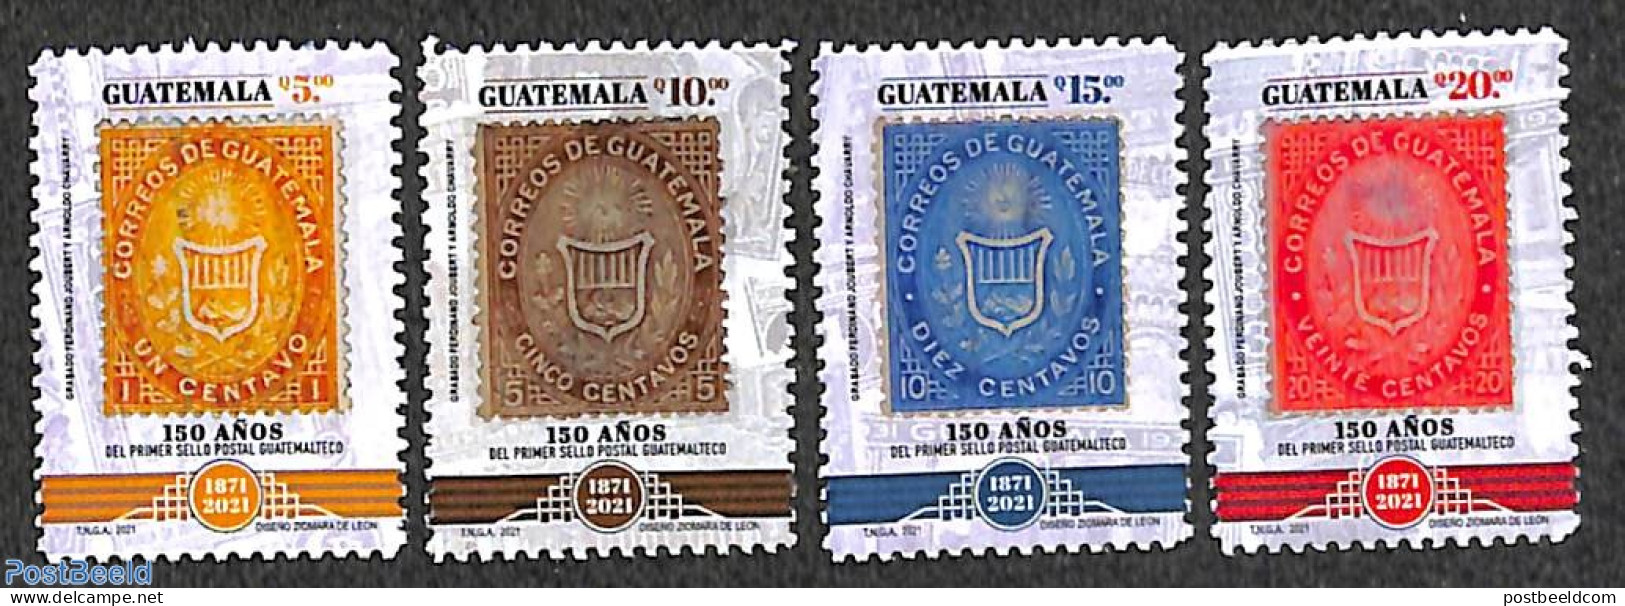 Guatemala 2021 150 Years Stamps 4v, Mint NH, Stamps On Stamps - Briefmarken Auf Briefmarken